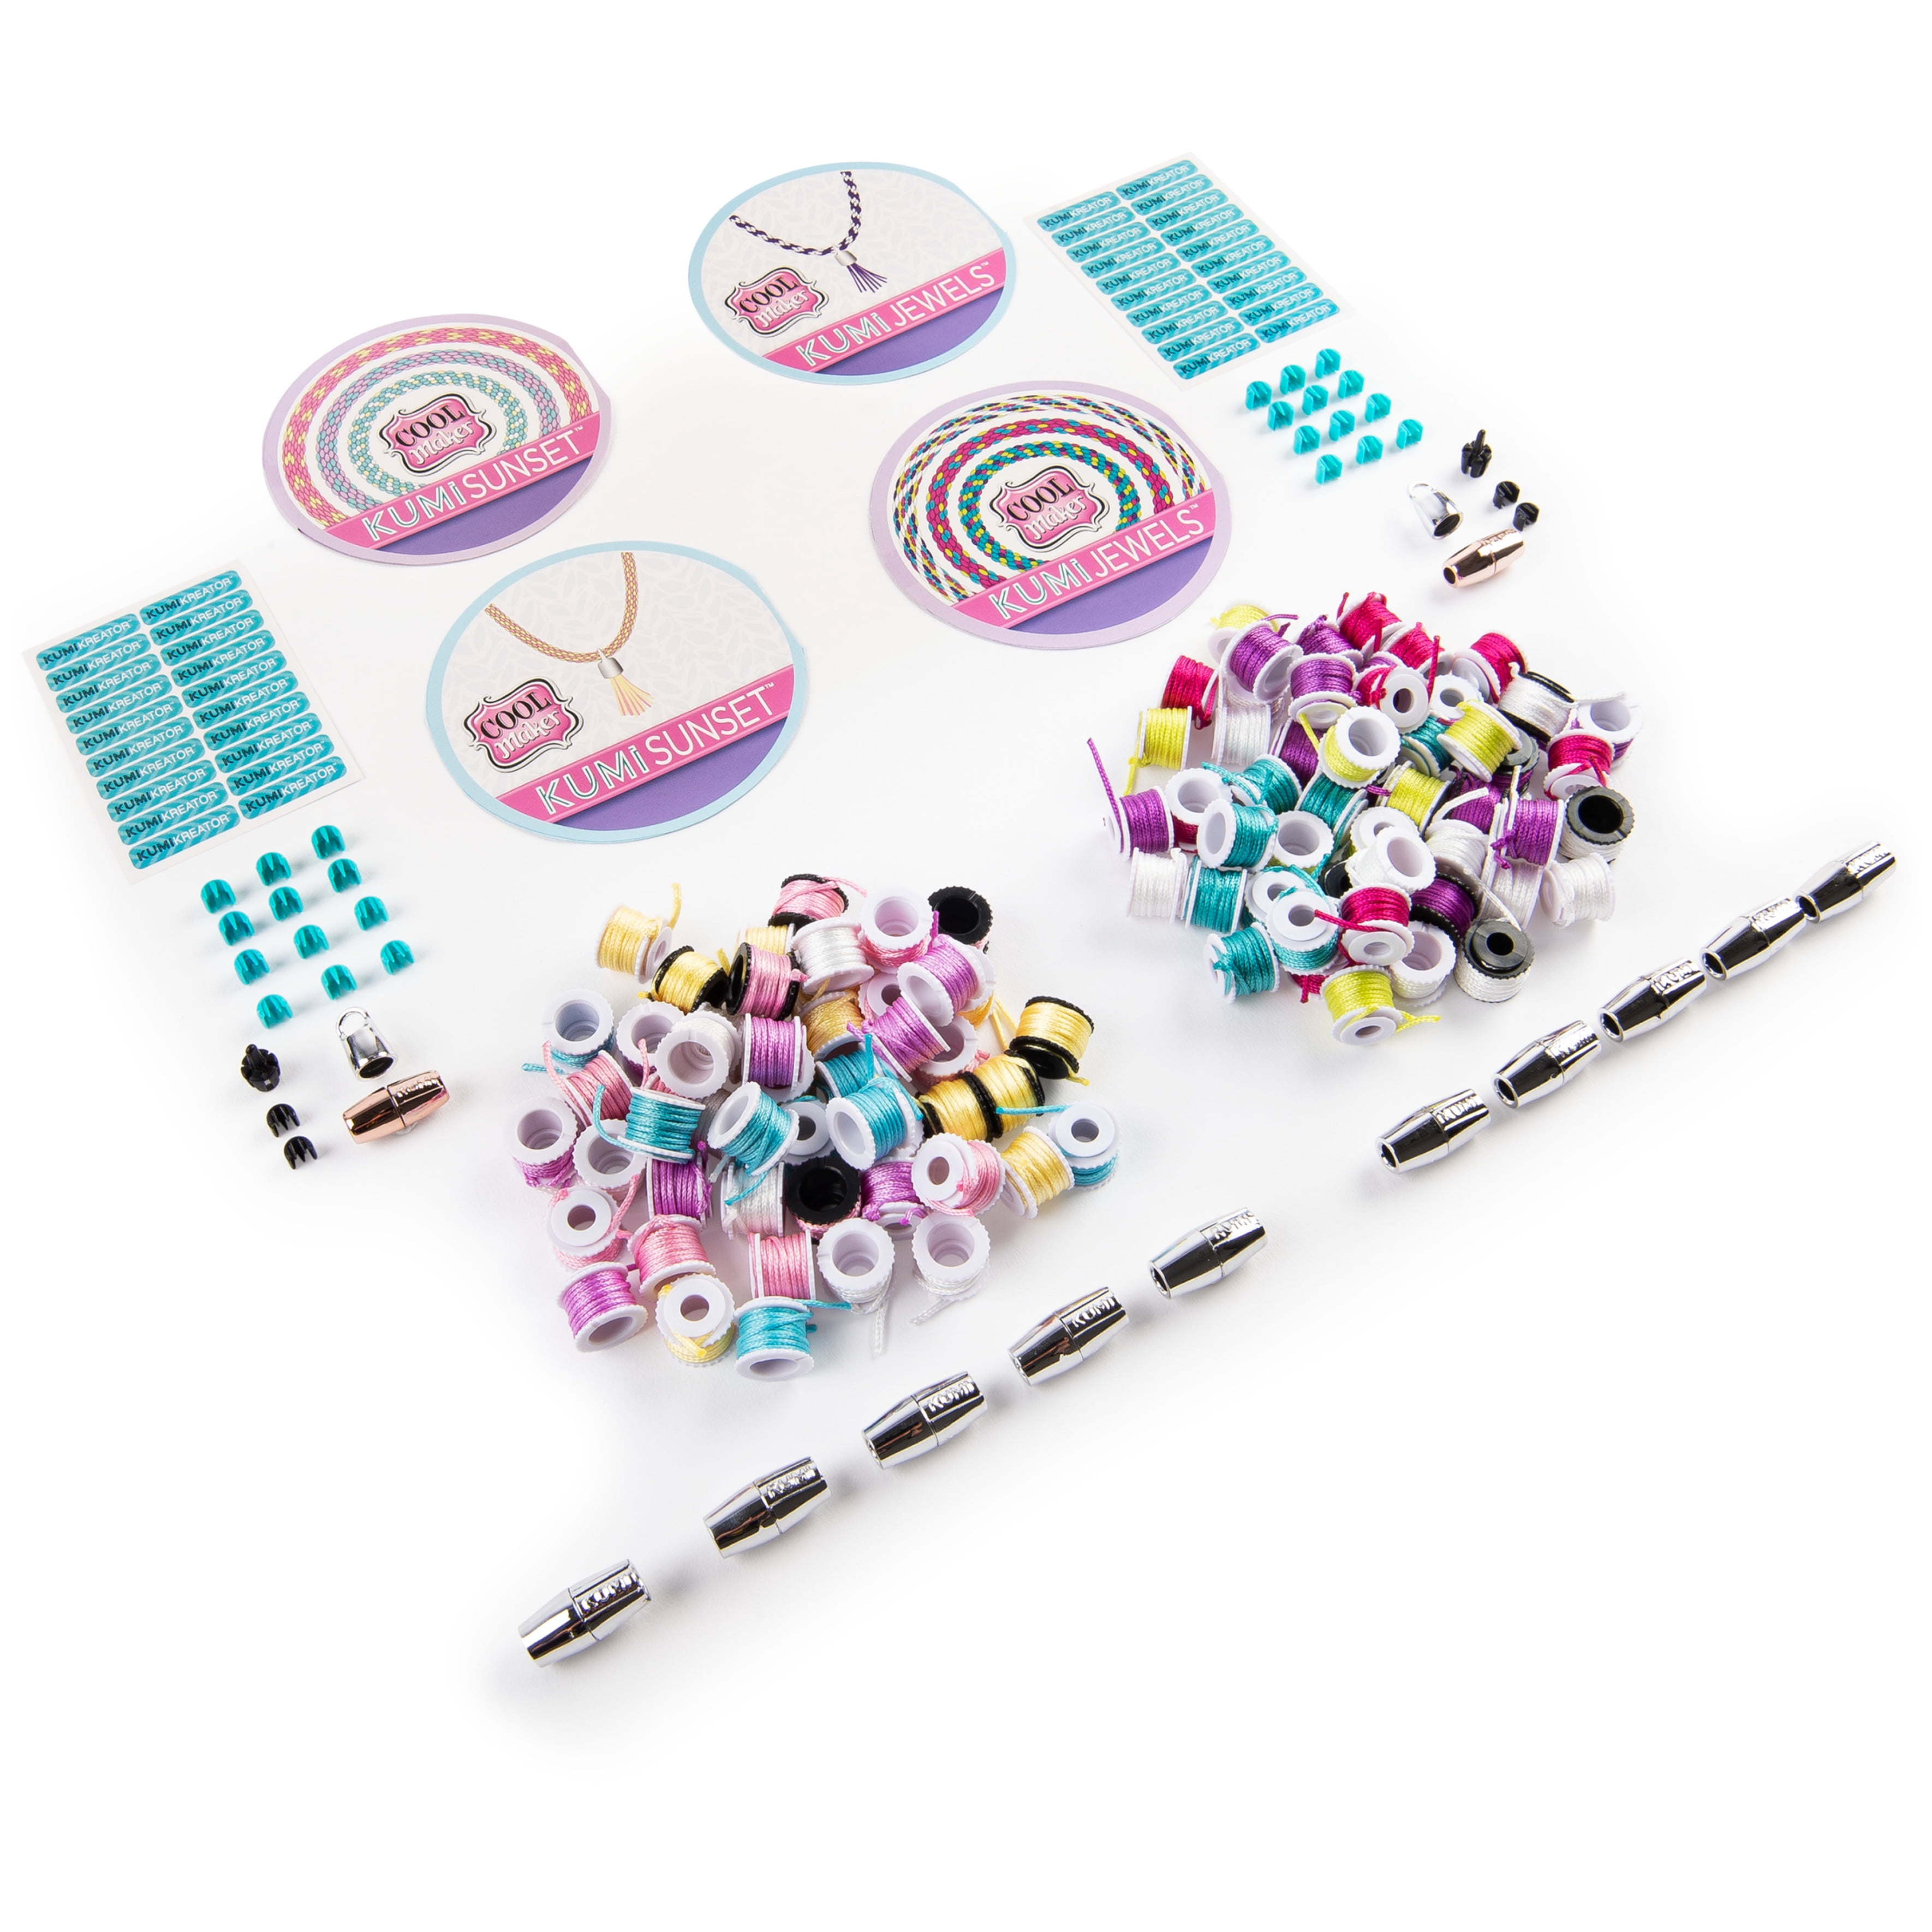 Cool Maker Kumi Kreator Fashion Pack Kumi Neons Refill Set - ToyWiz